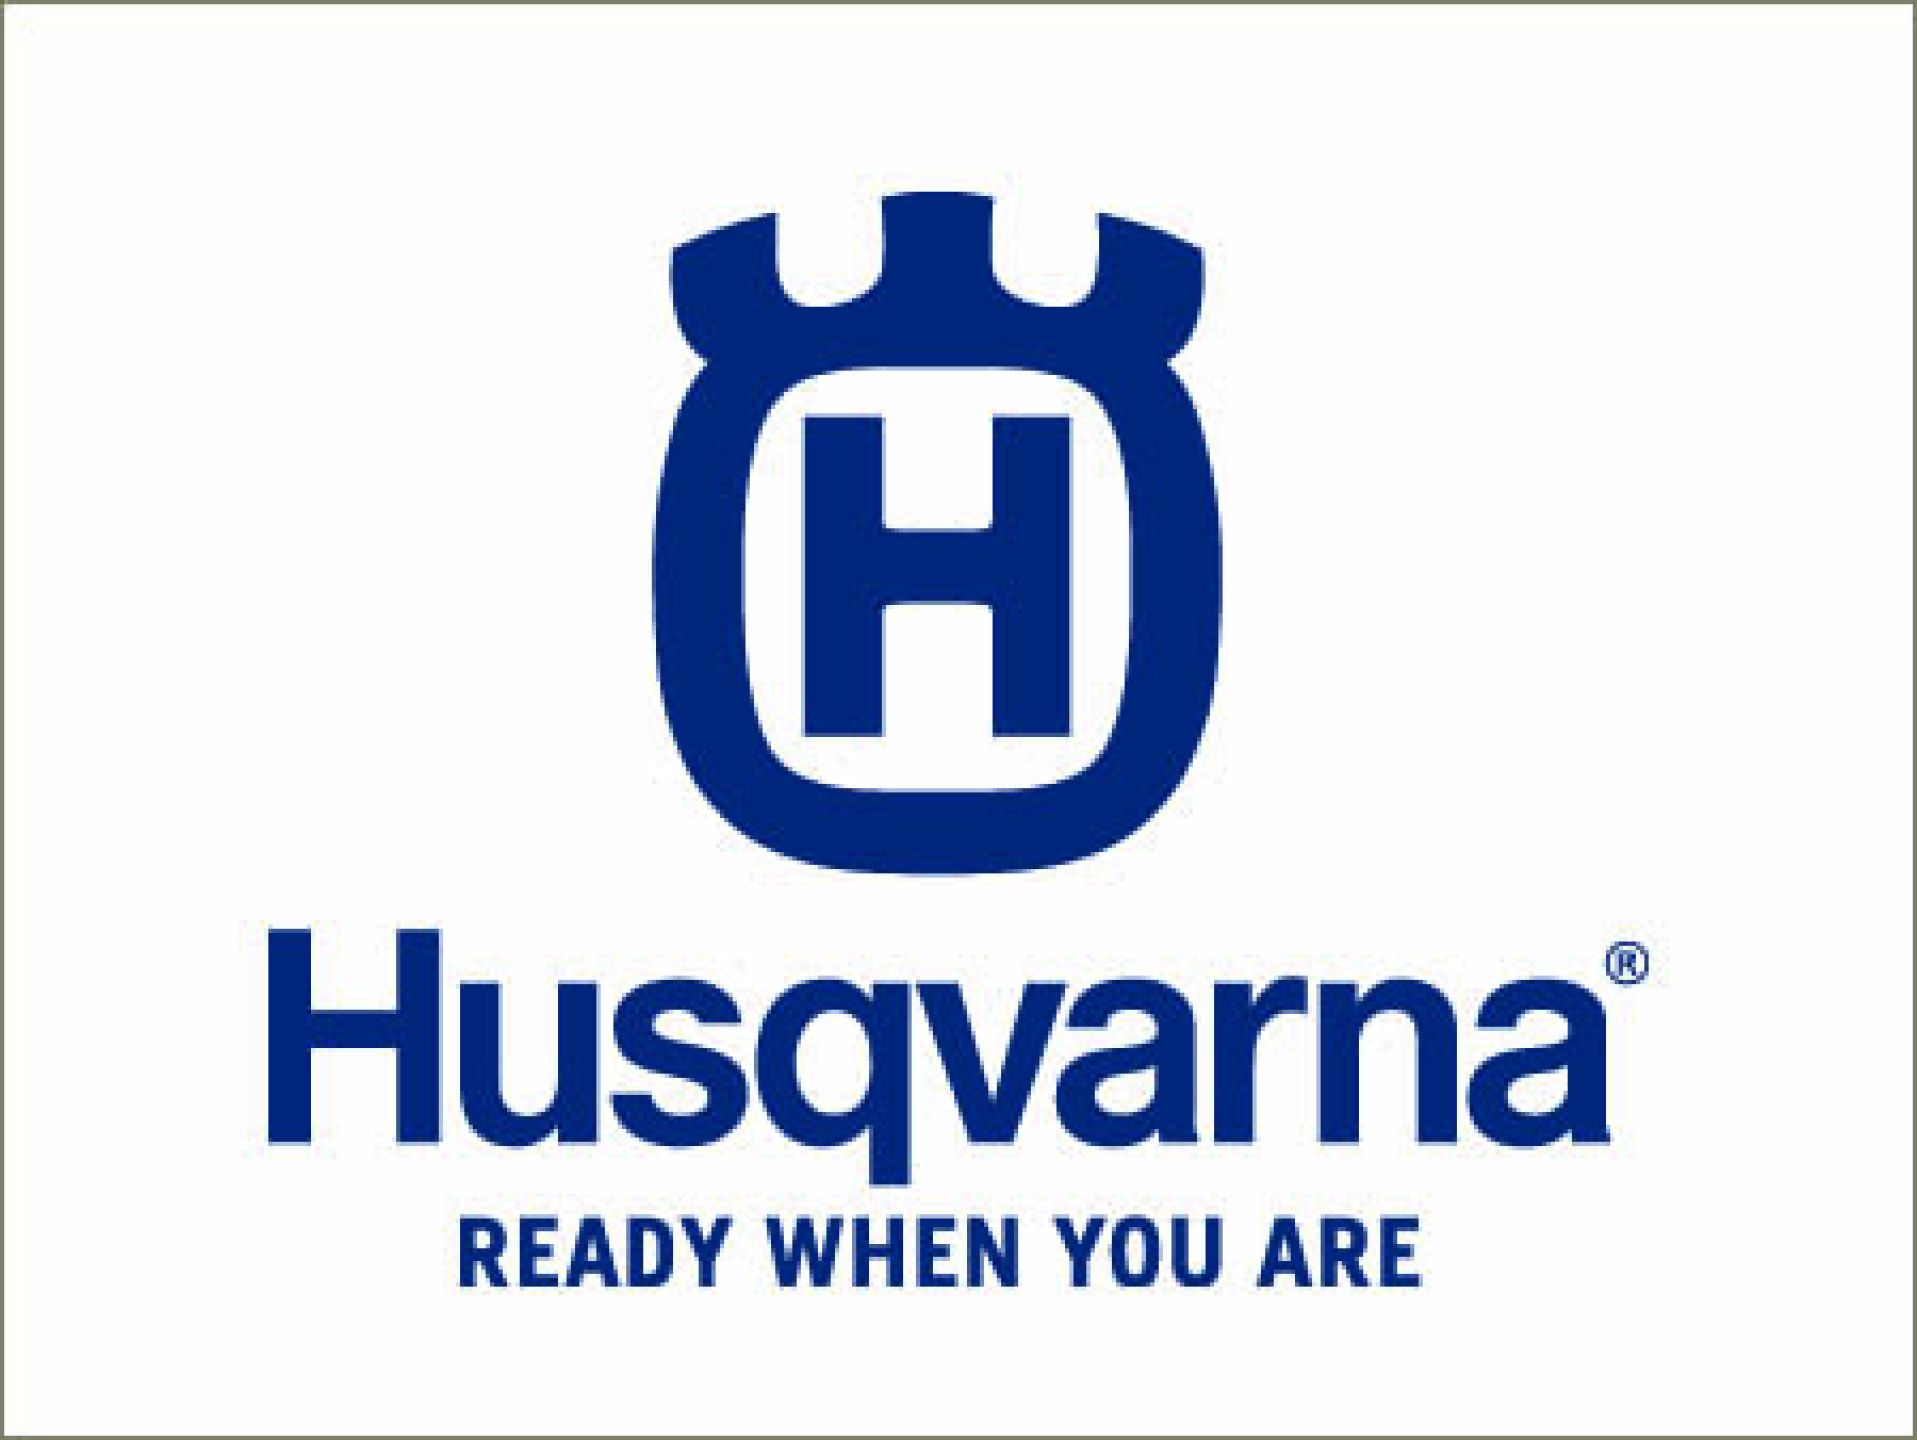 HBH-Baumaschinen-Fachmarkt-HUSQVARNA-e0e512d2 HBH Baumaschinenhandel - Mieten oder Kaufen